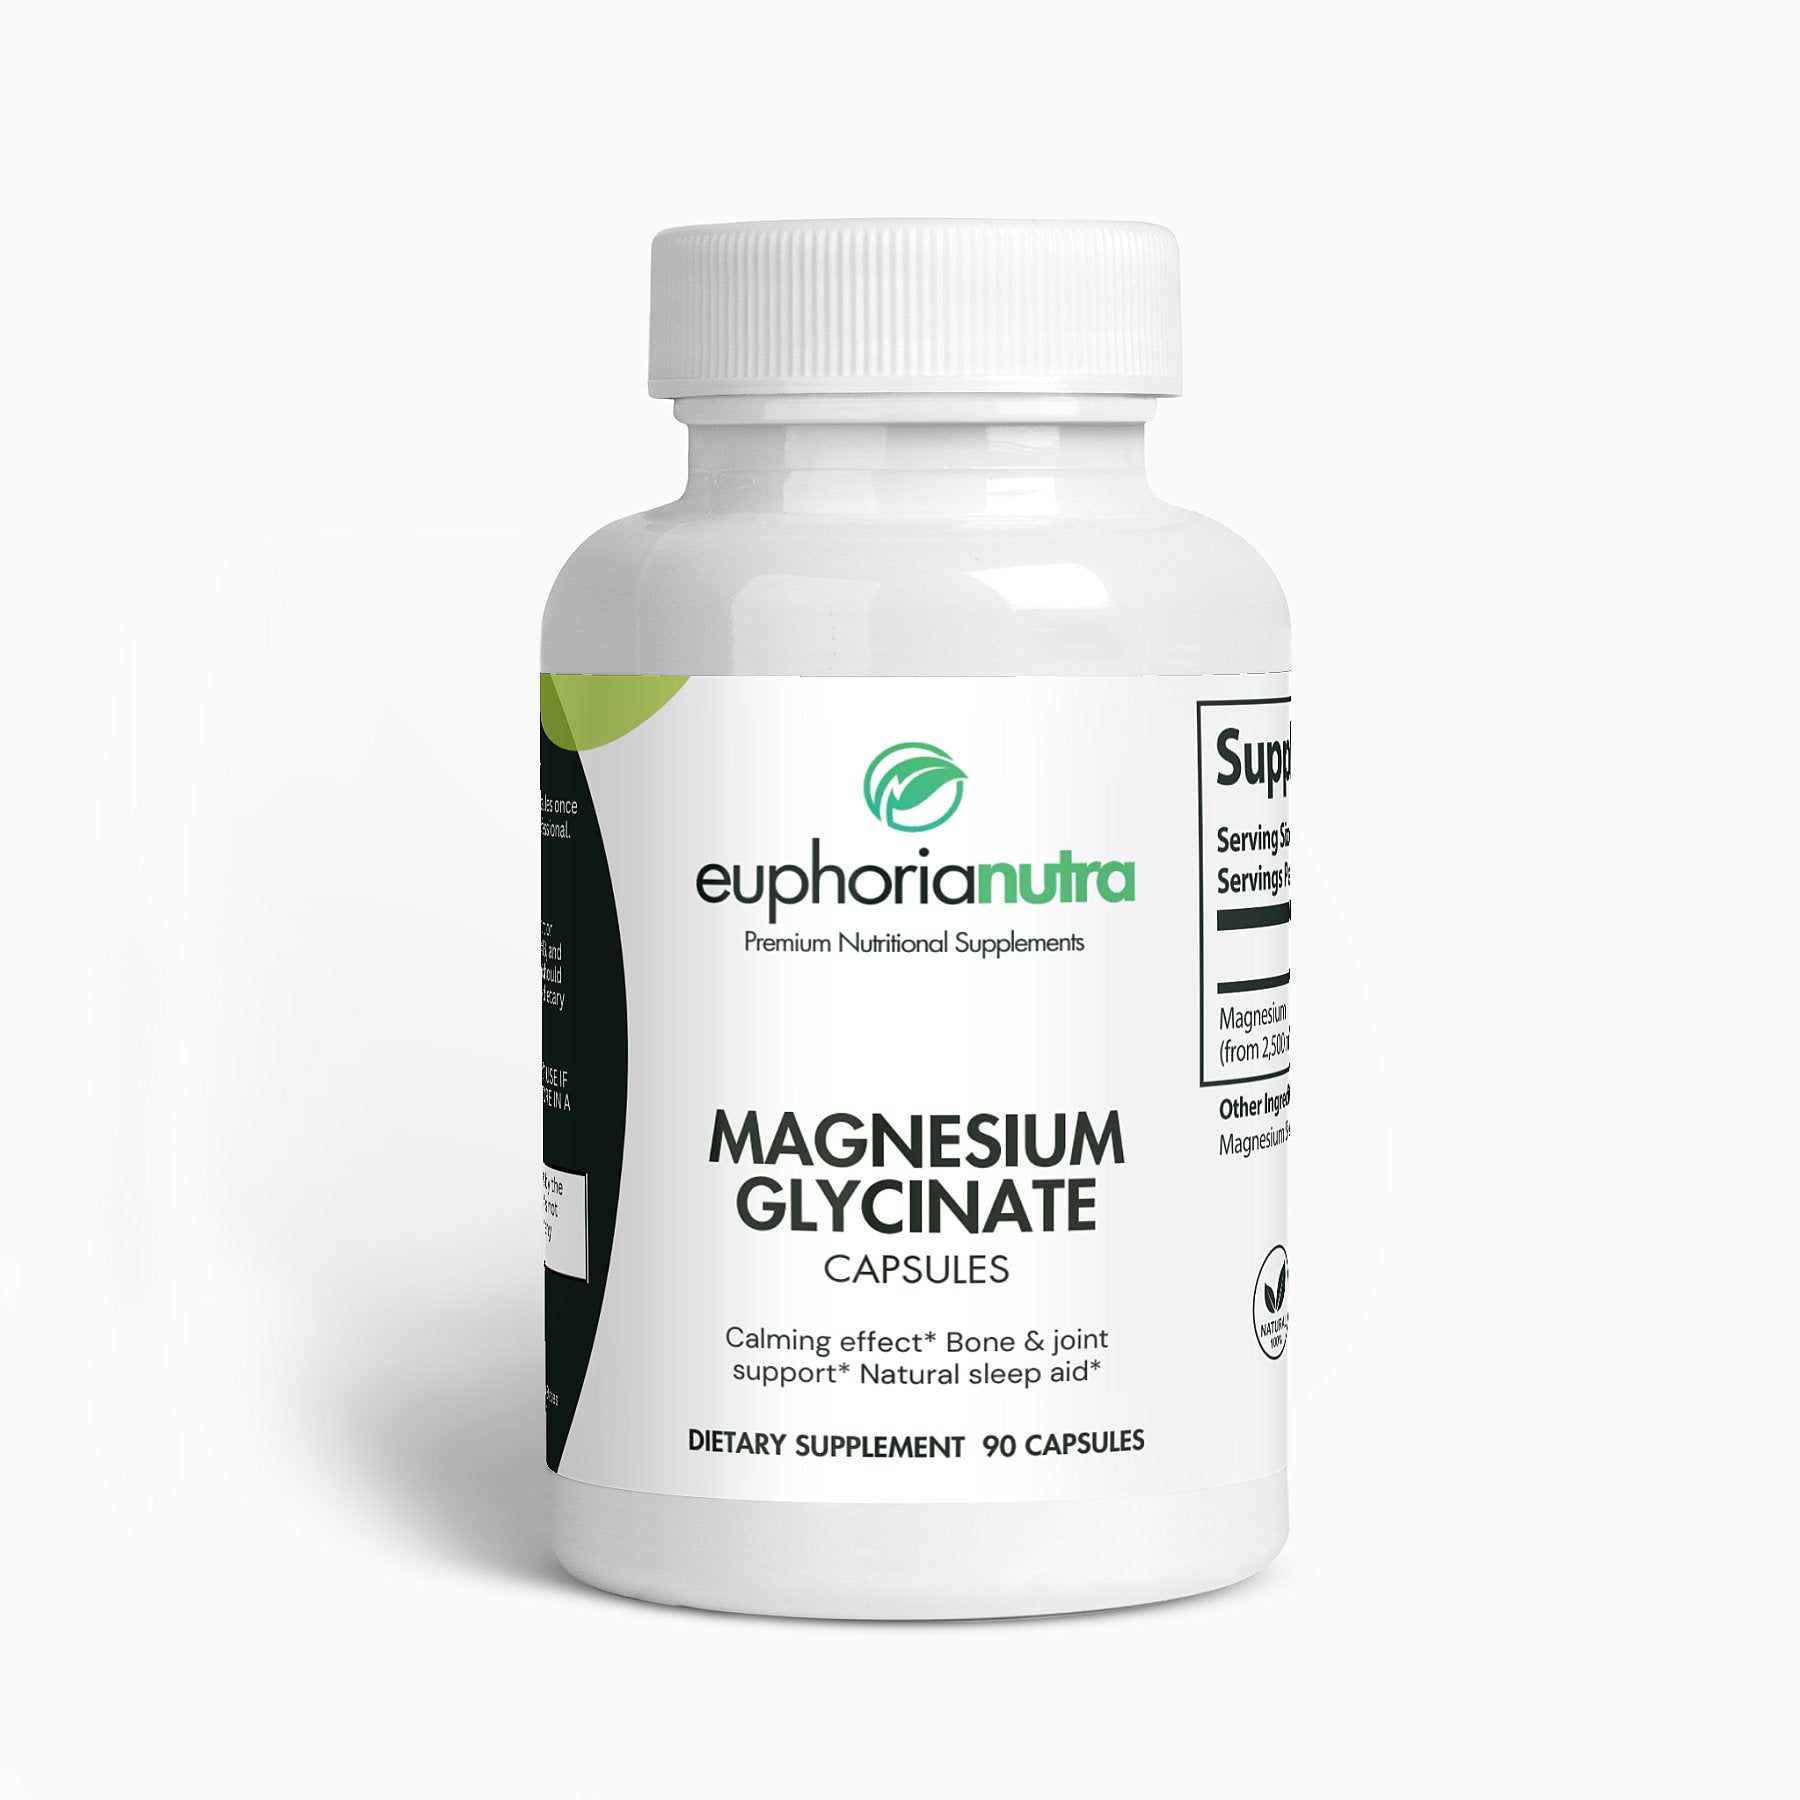 Euphorianutra Magnesium Glycinate Capsules 